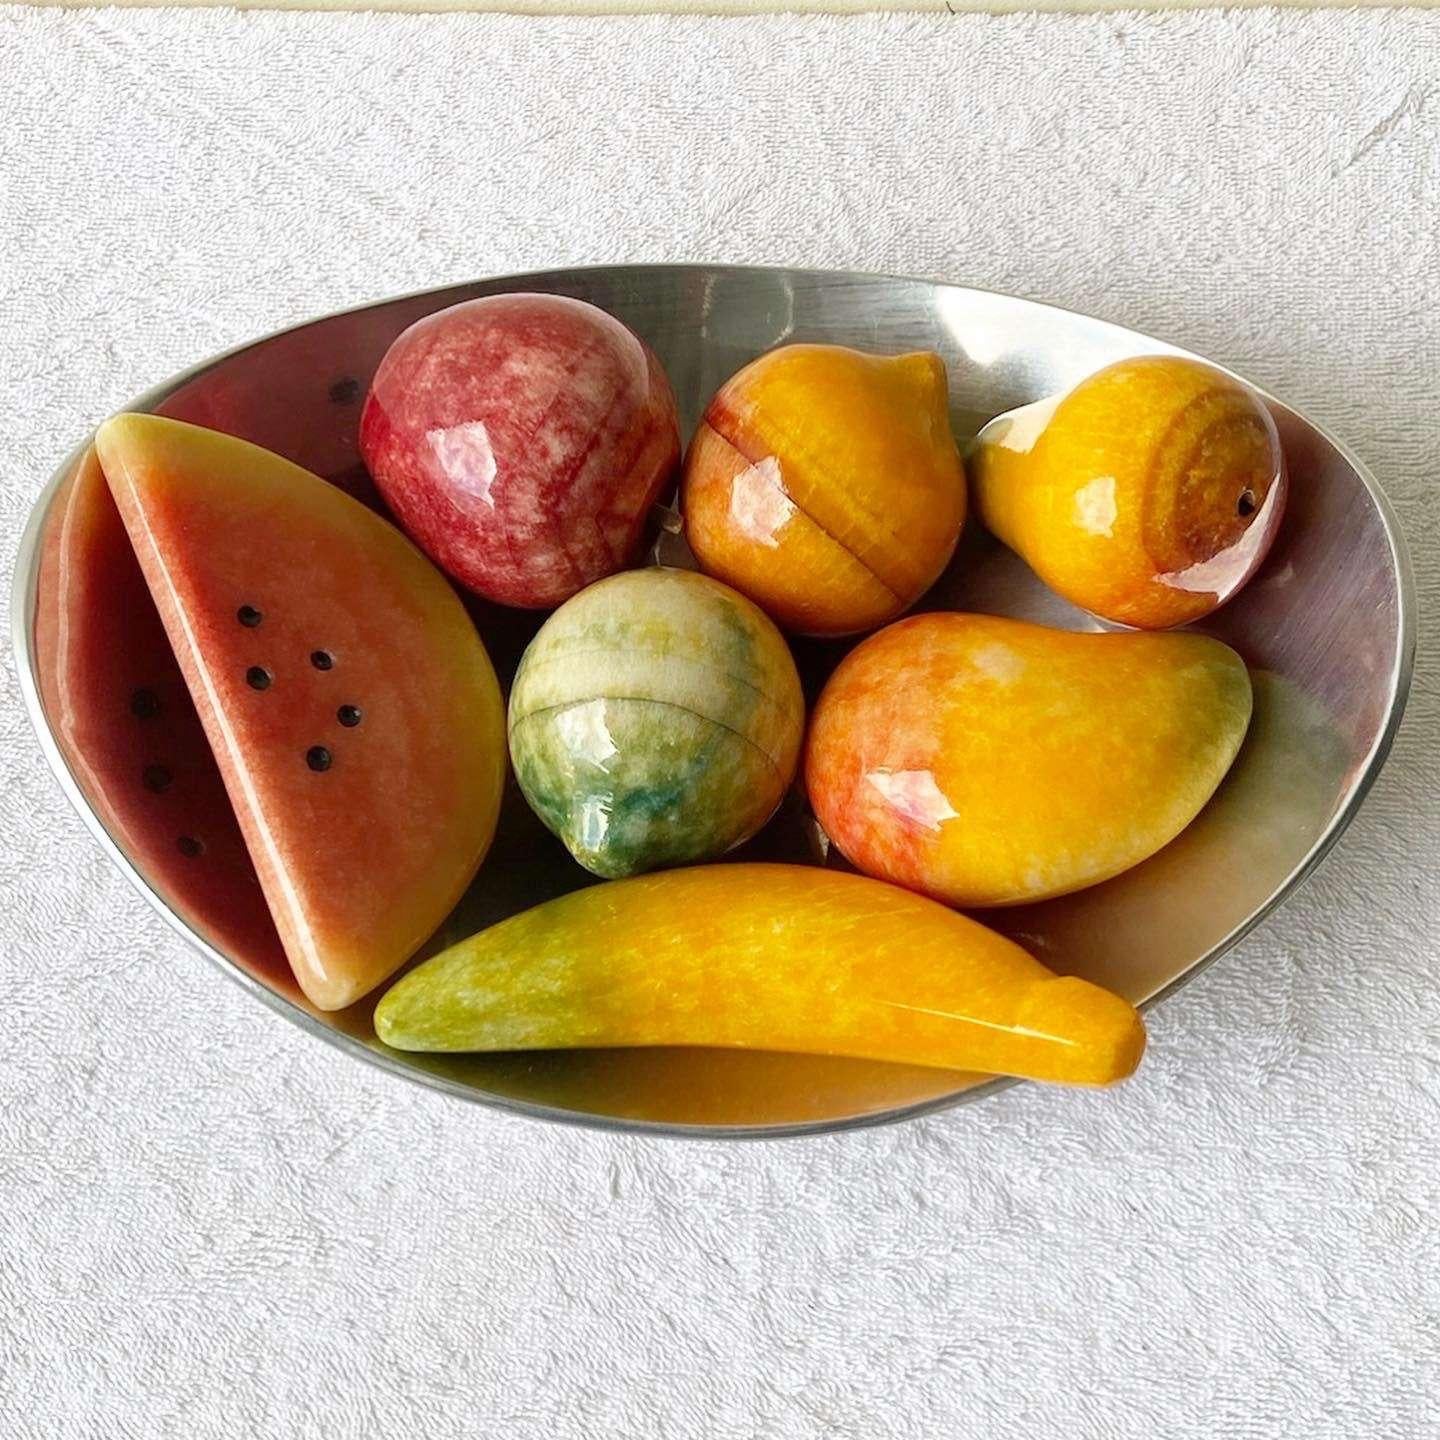 Amazing Vintage Marmor Obst in Platte. Wir haben eine Wassermelone, Banane, Birne, Mango und mehr!

Die Größe der Früchte reicht von 3